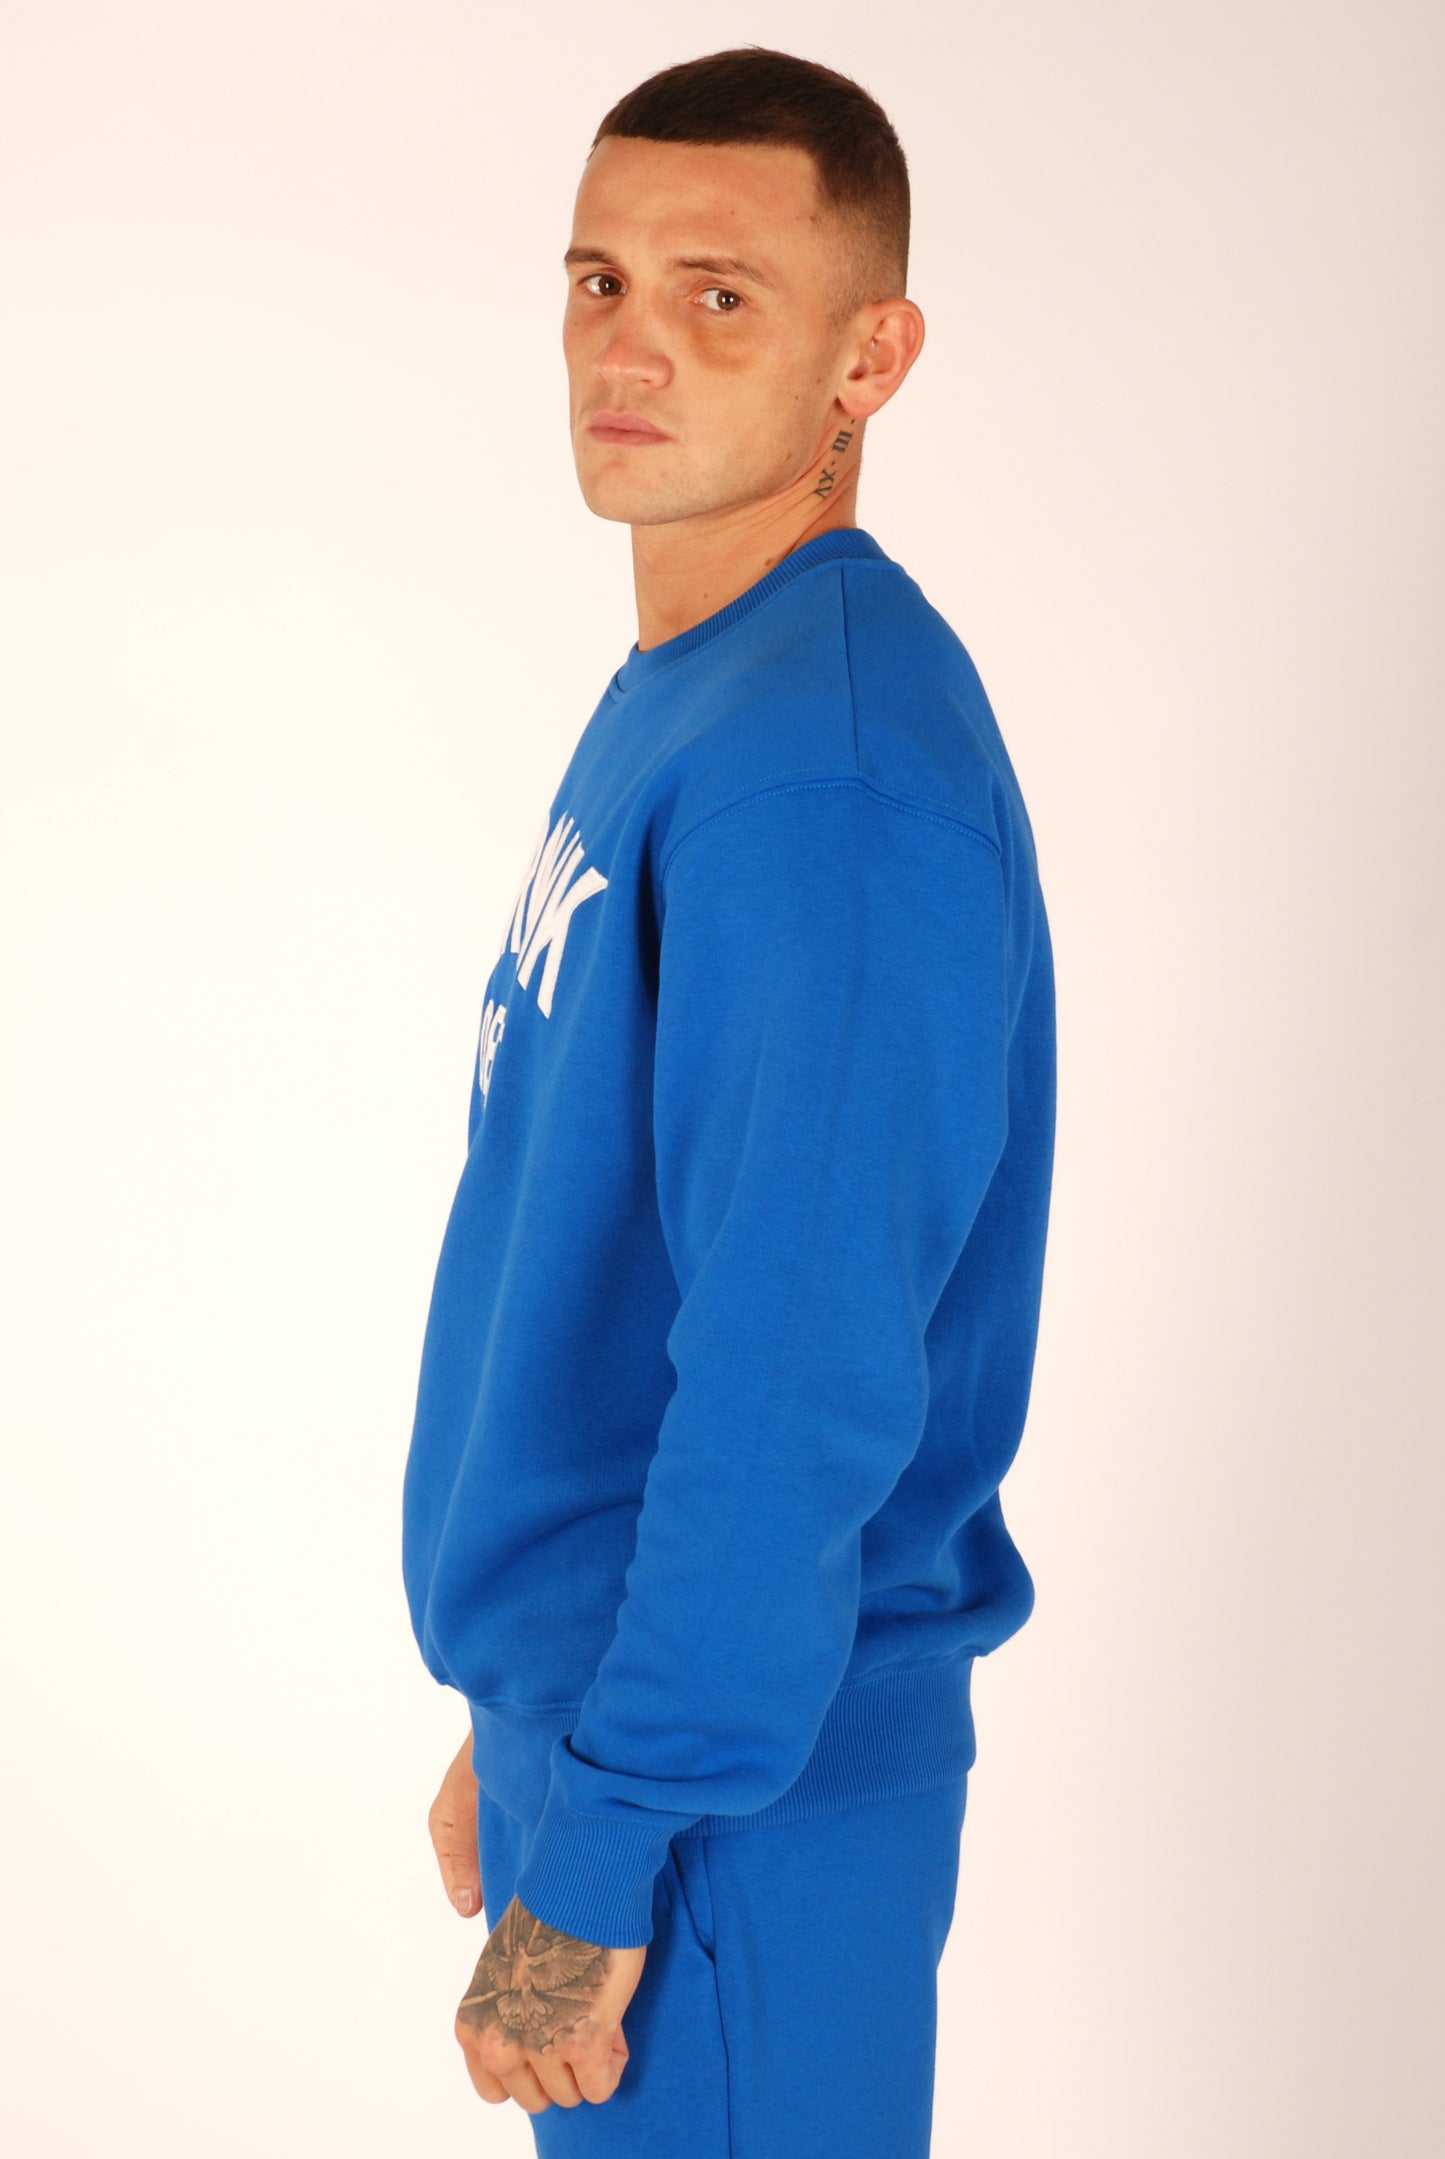 KRONK Detroit Applique Sweatshirt Loose Fit Royal Blue